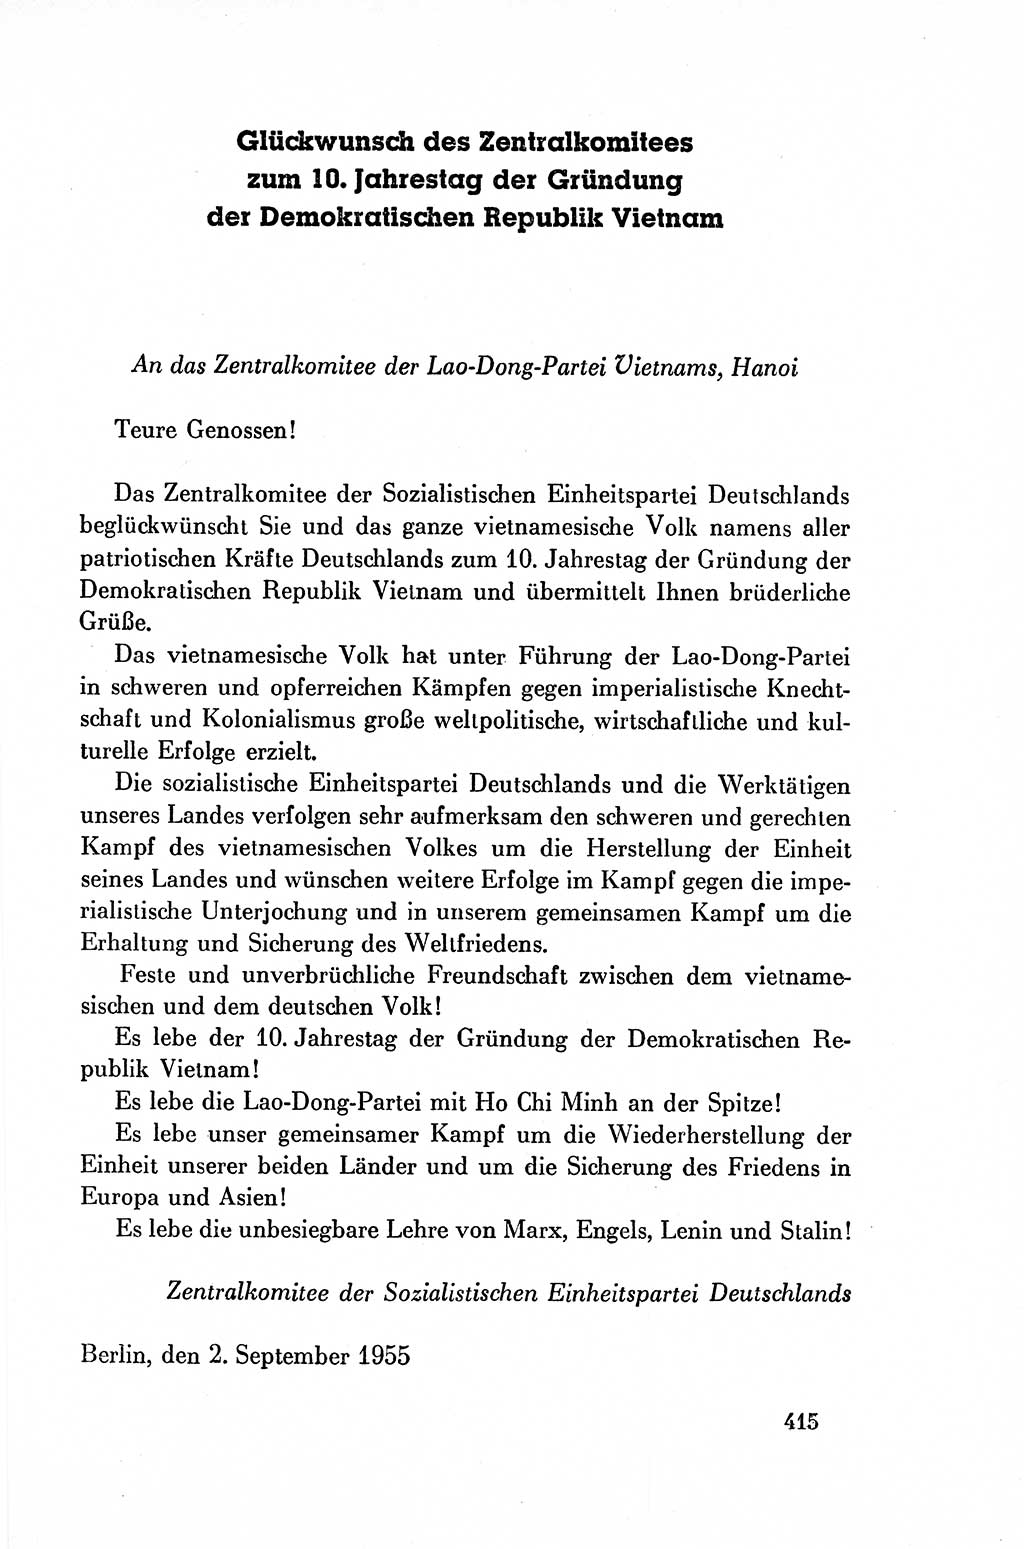 Dokumente der Sozialistischen Einheitspartei Deutschlands (SED) [Deutsche Demokratische Republik (DDR)] 1954-1955, Seite 415 (Dok. SED DDR 1954-1955, S. 415)